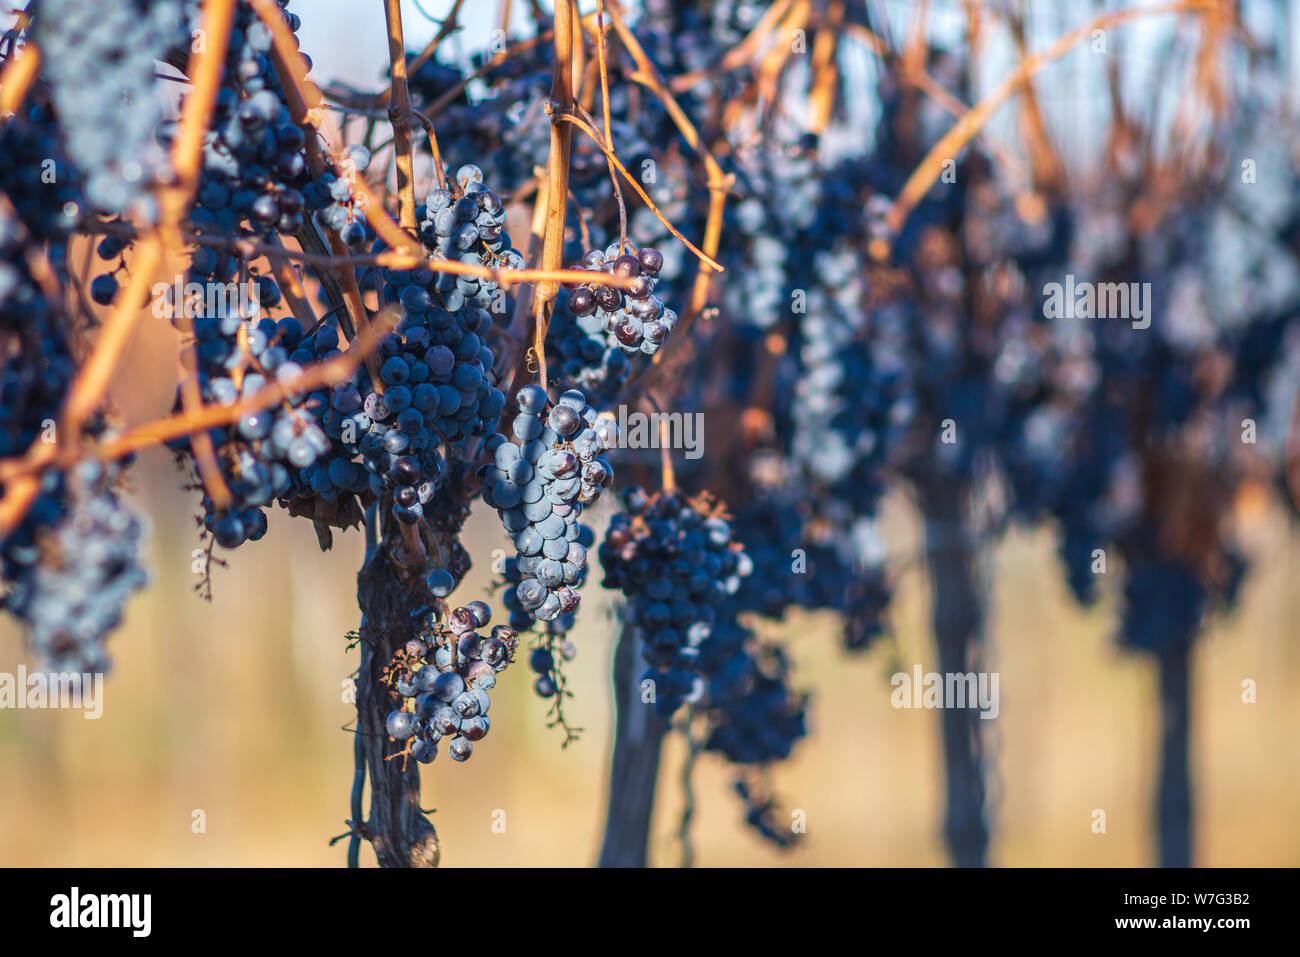 Vigne bleue raisins dans le vignoble. Les raisins pour faire le vin de glace est de l'exploitation. Vue détaillée d'une gelée de raisins dans une vigne en automne, Hongrie Banque D'Images